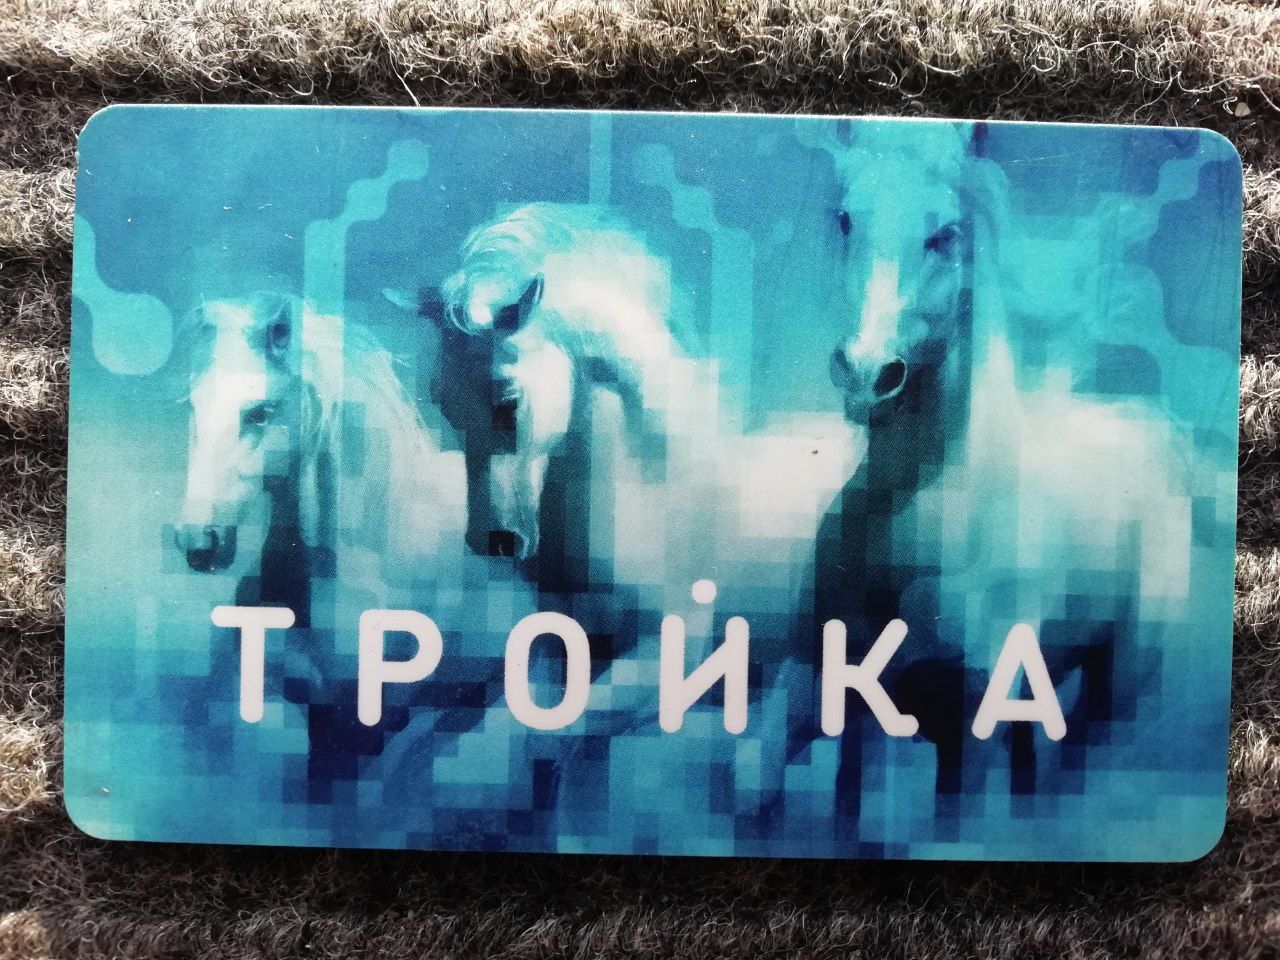 Troika card